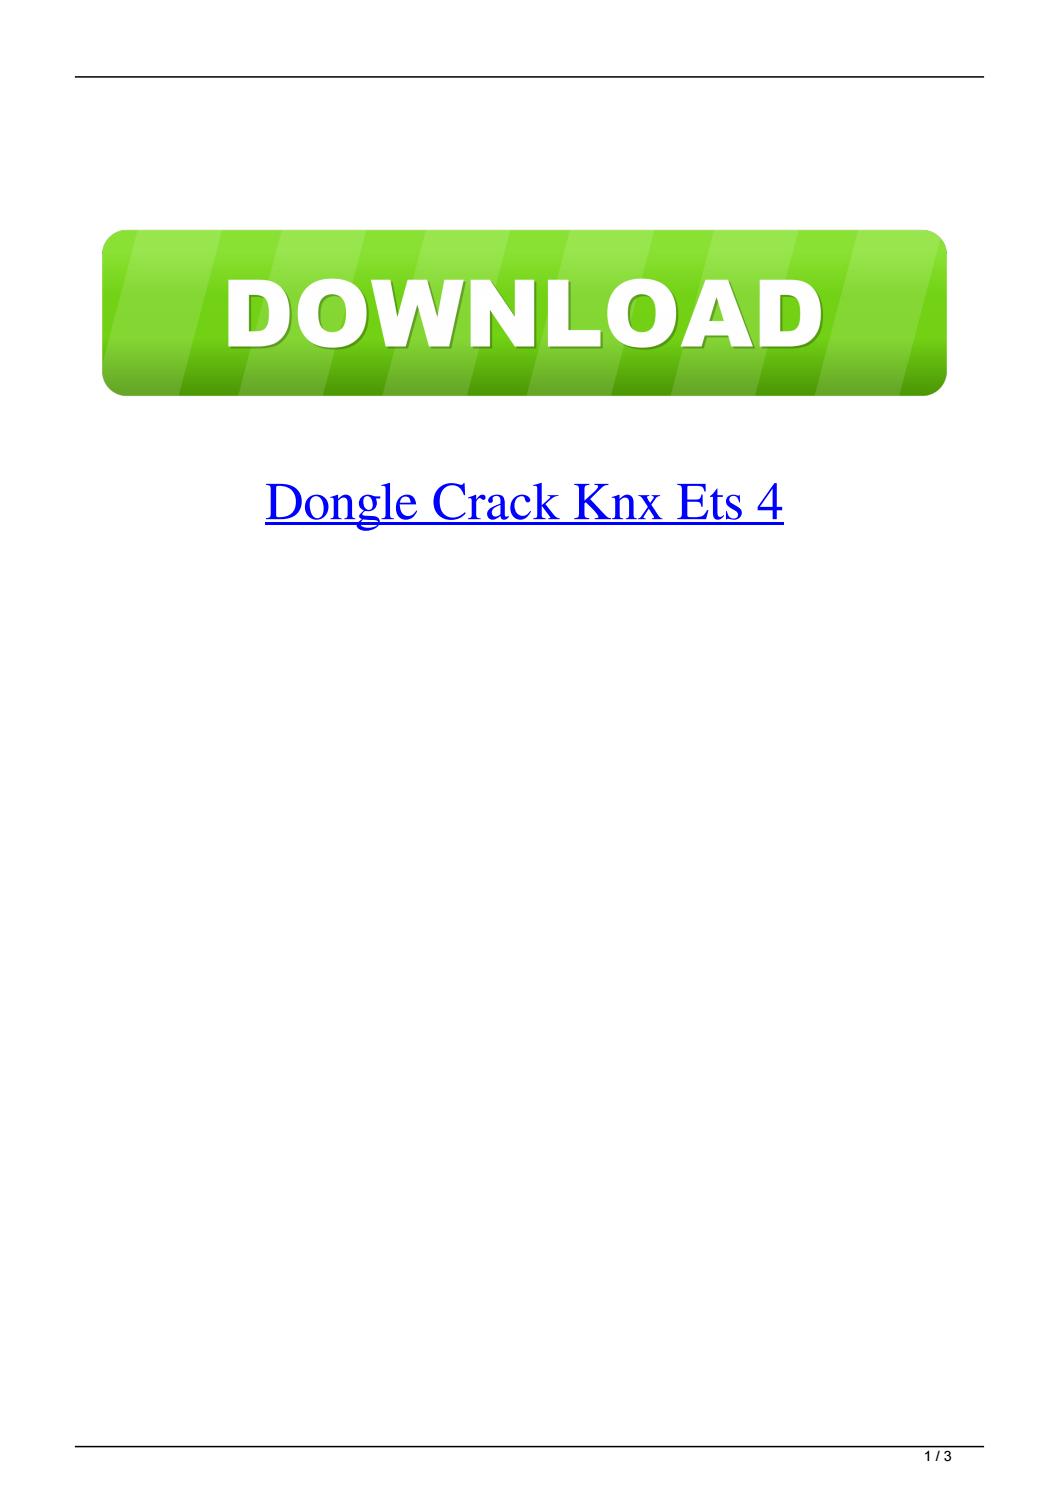 ets4 knx download crack corel